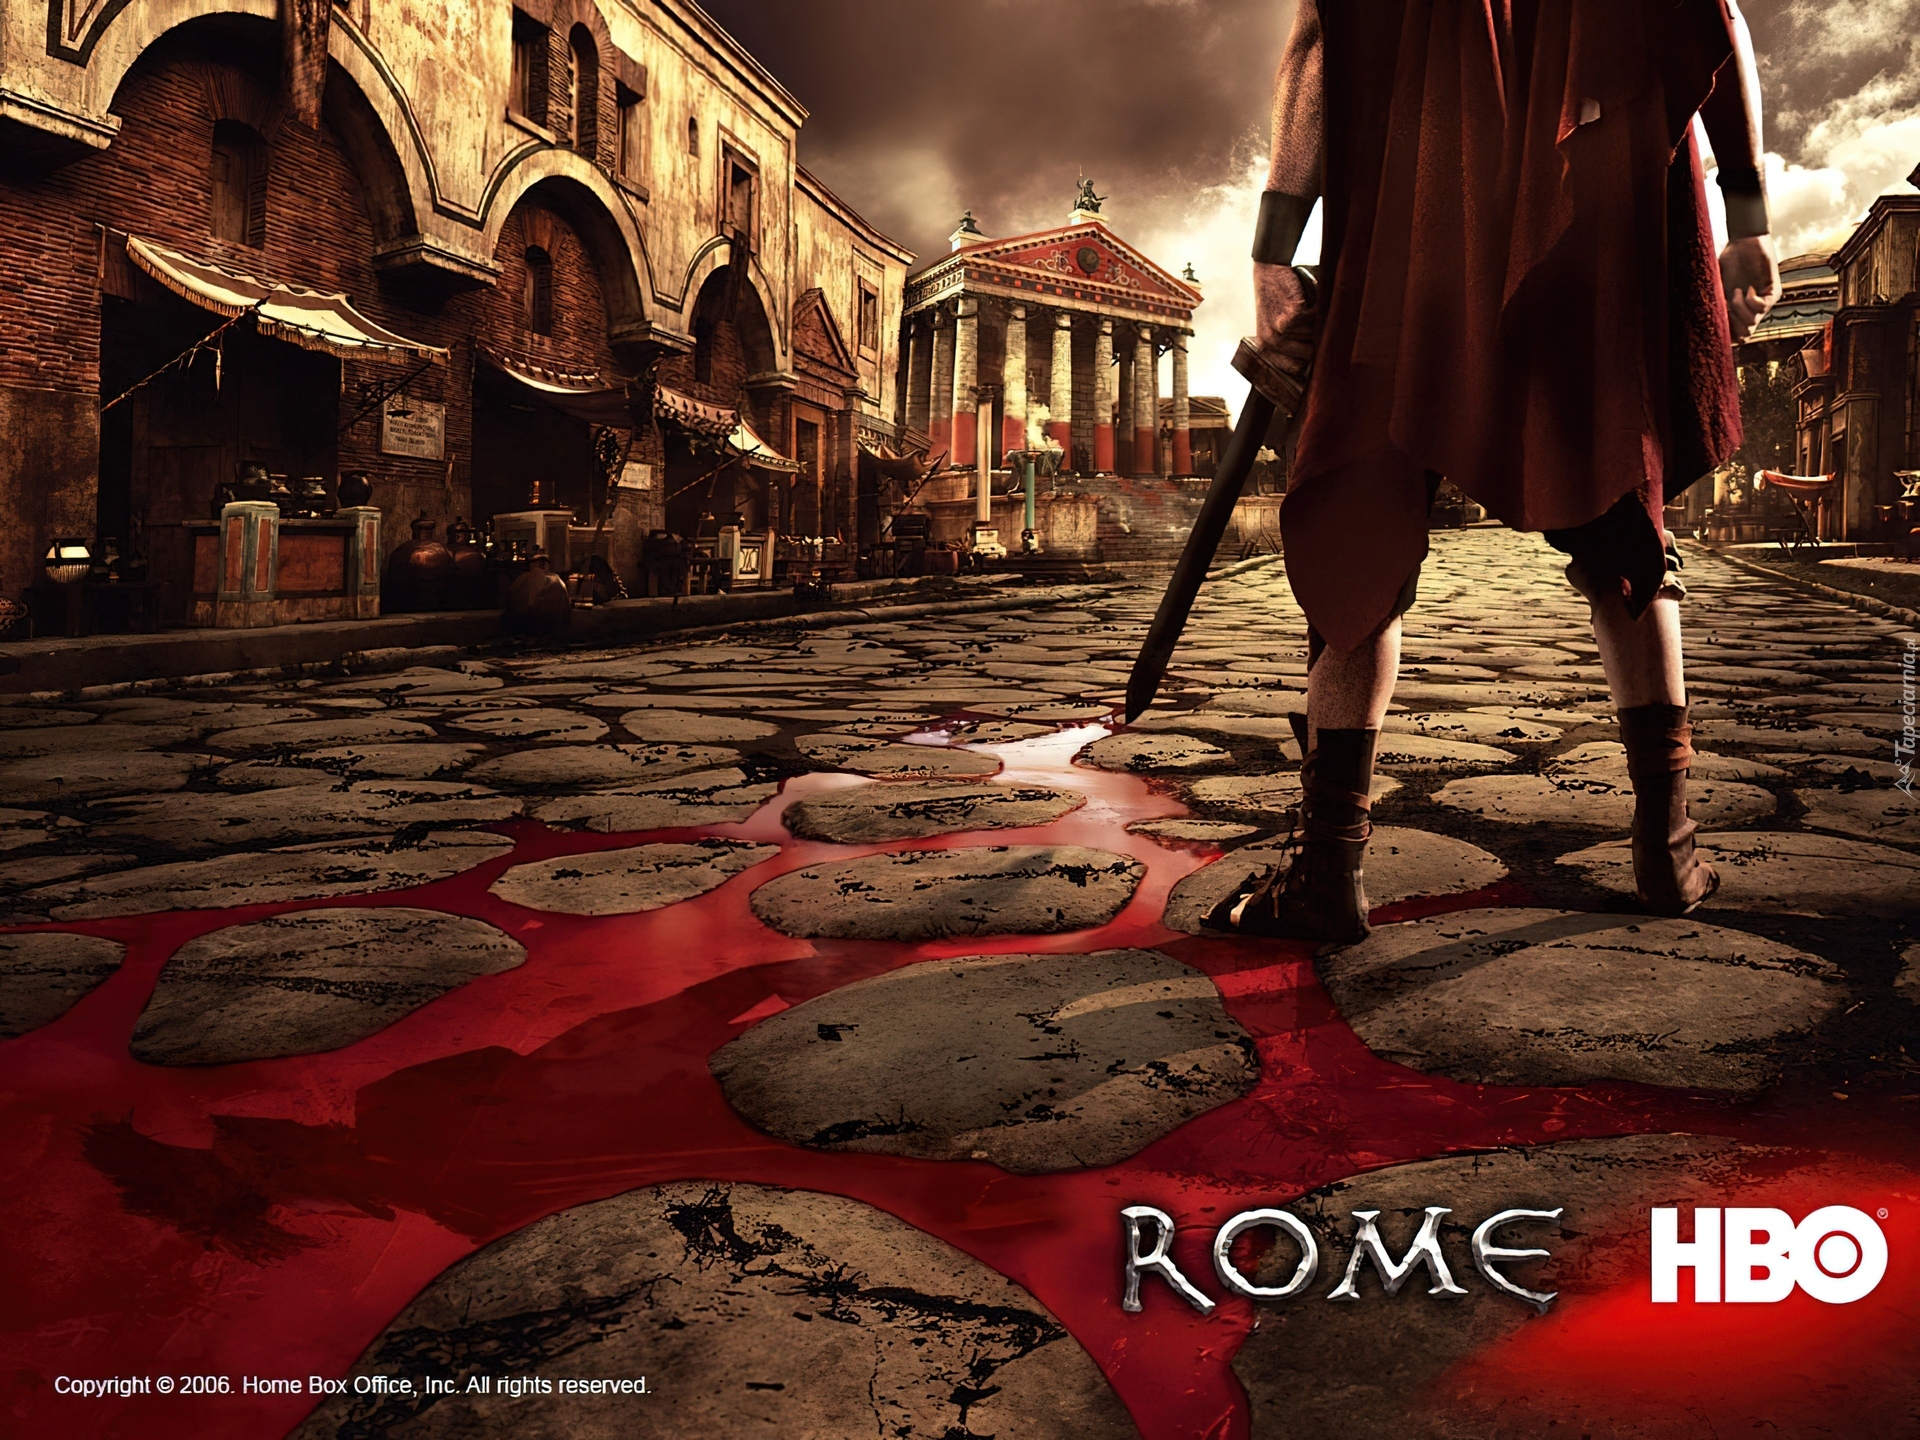 Rome, Rzym, rynek, miecz, człowiek